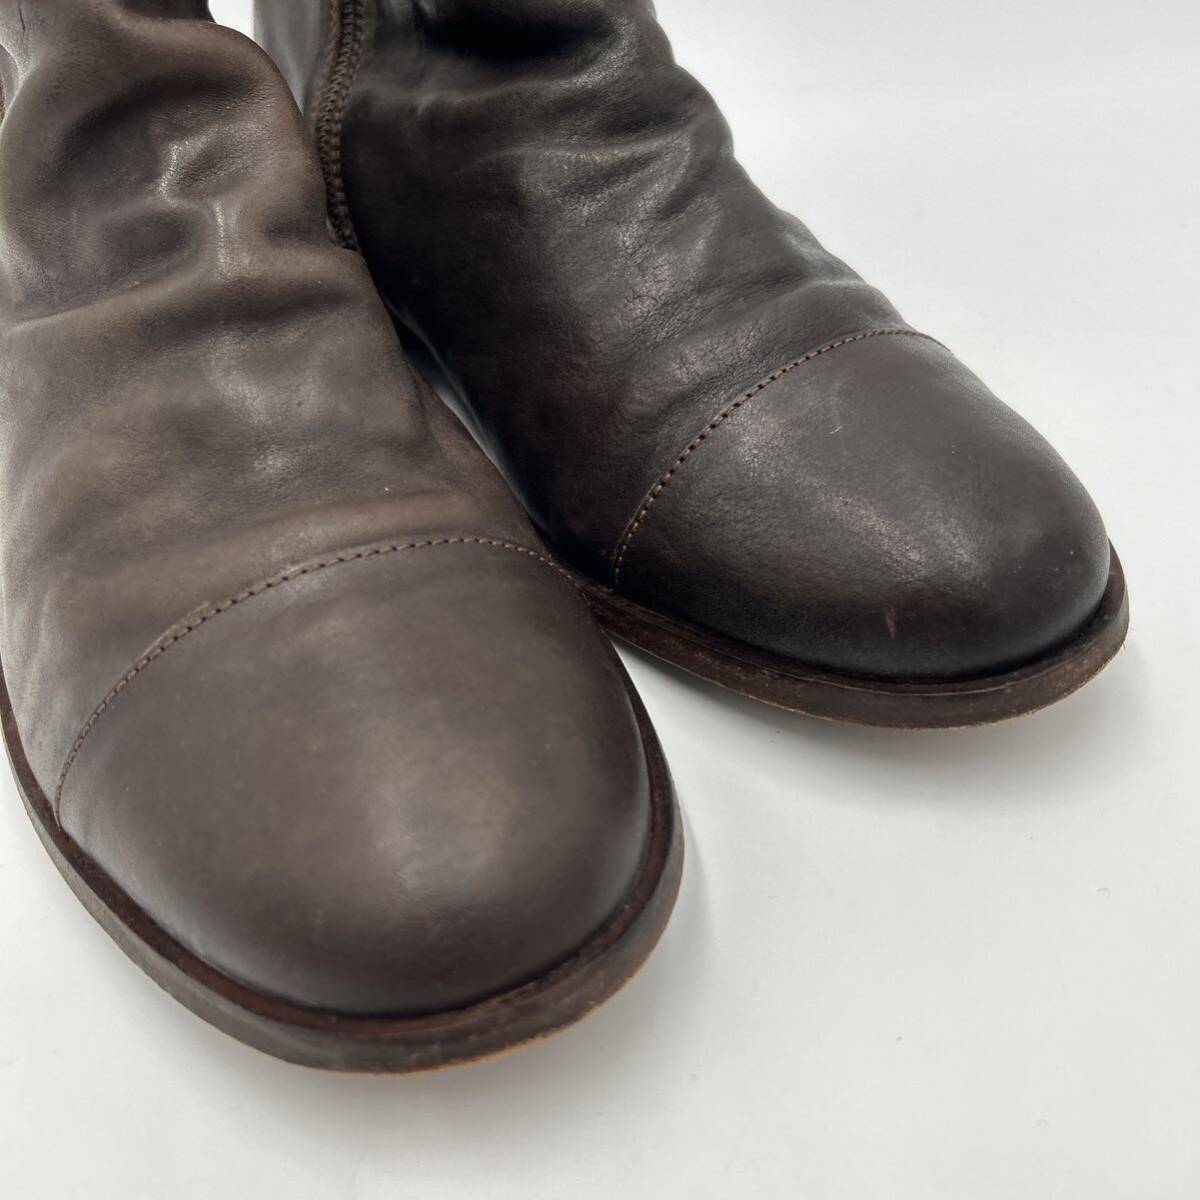 J # finest quality leather use \' popular model \' CAMPER Camper original leather LEATHER side Zip short boots EU43 27.5cm men's gentleman shoes shoes 